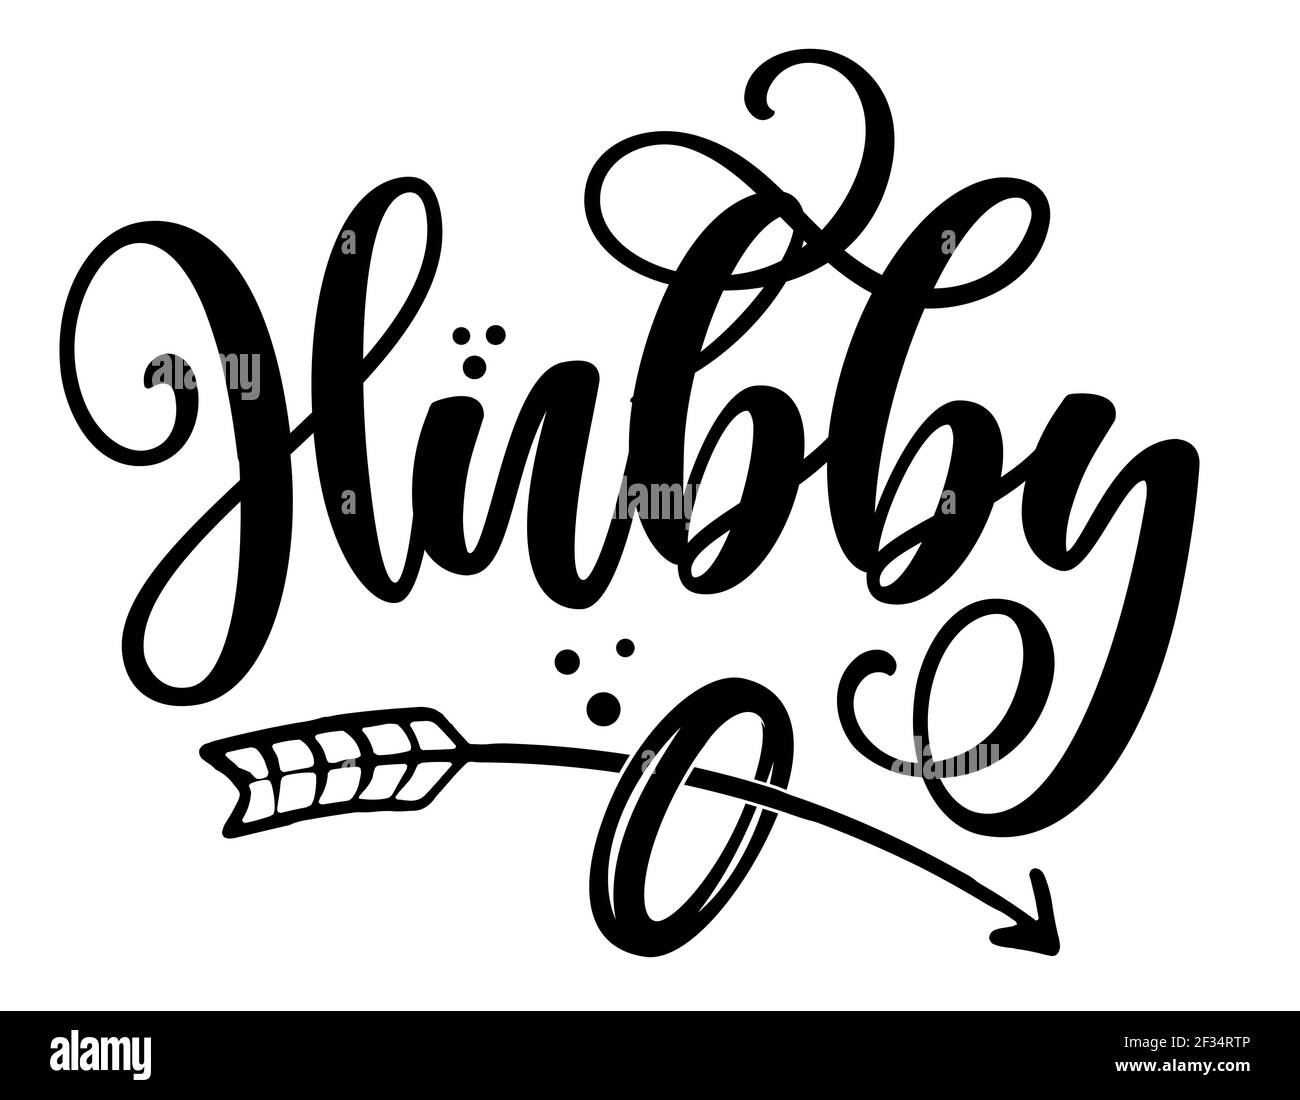 Hubby Word - Schwarze Hand mit Buchstaben Zitate mit Diamantringe für Grußkarten, Geschenk-Tags, Etiketten, Hochzeit-Sets. Bräutigam und Braut Design. Bachelorette p Stock Vektor